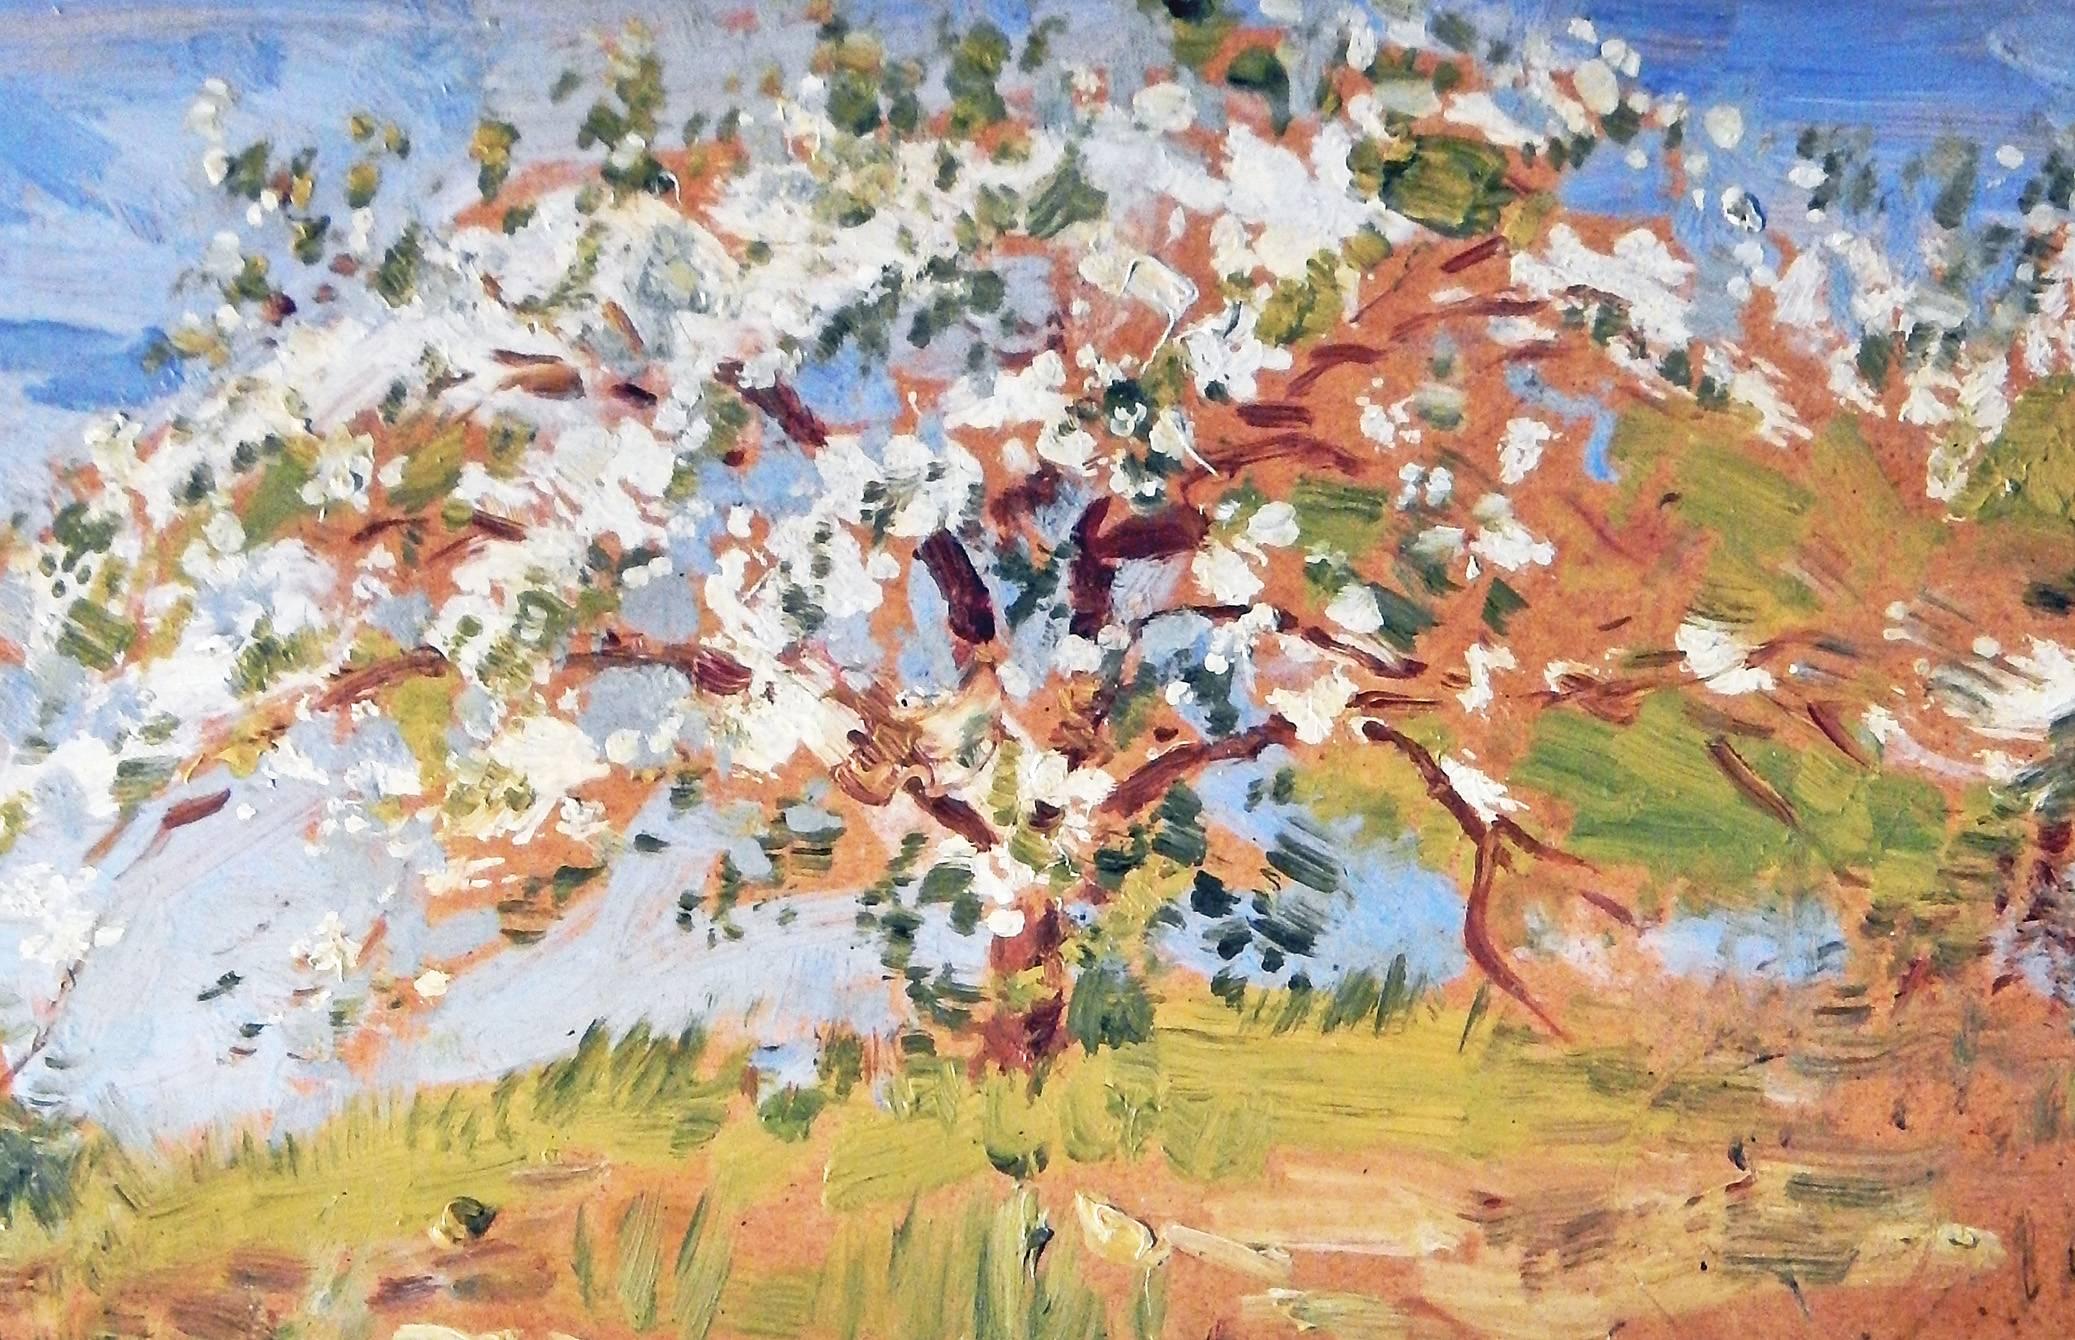 Dieses frische und leichte impressionistische Gemälde eines sich ausbreitenden, blühenden Apfelbaums, der über ein in frühlingshaften Grün- und Goldtönen leuchtendes Feld herrscht, wurde von Edward Siebert Anfang des 20. Jahrhunderts gemalt. Der im